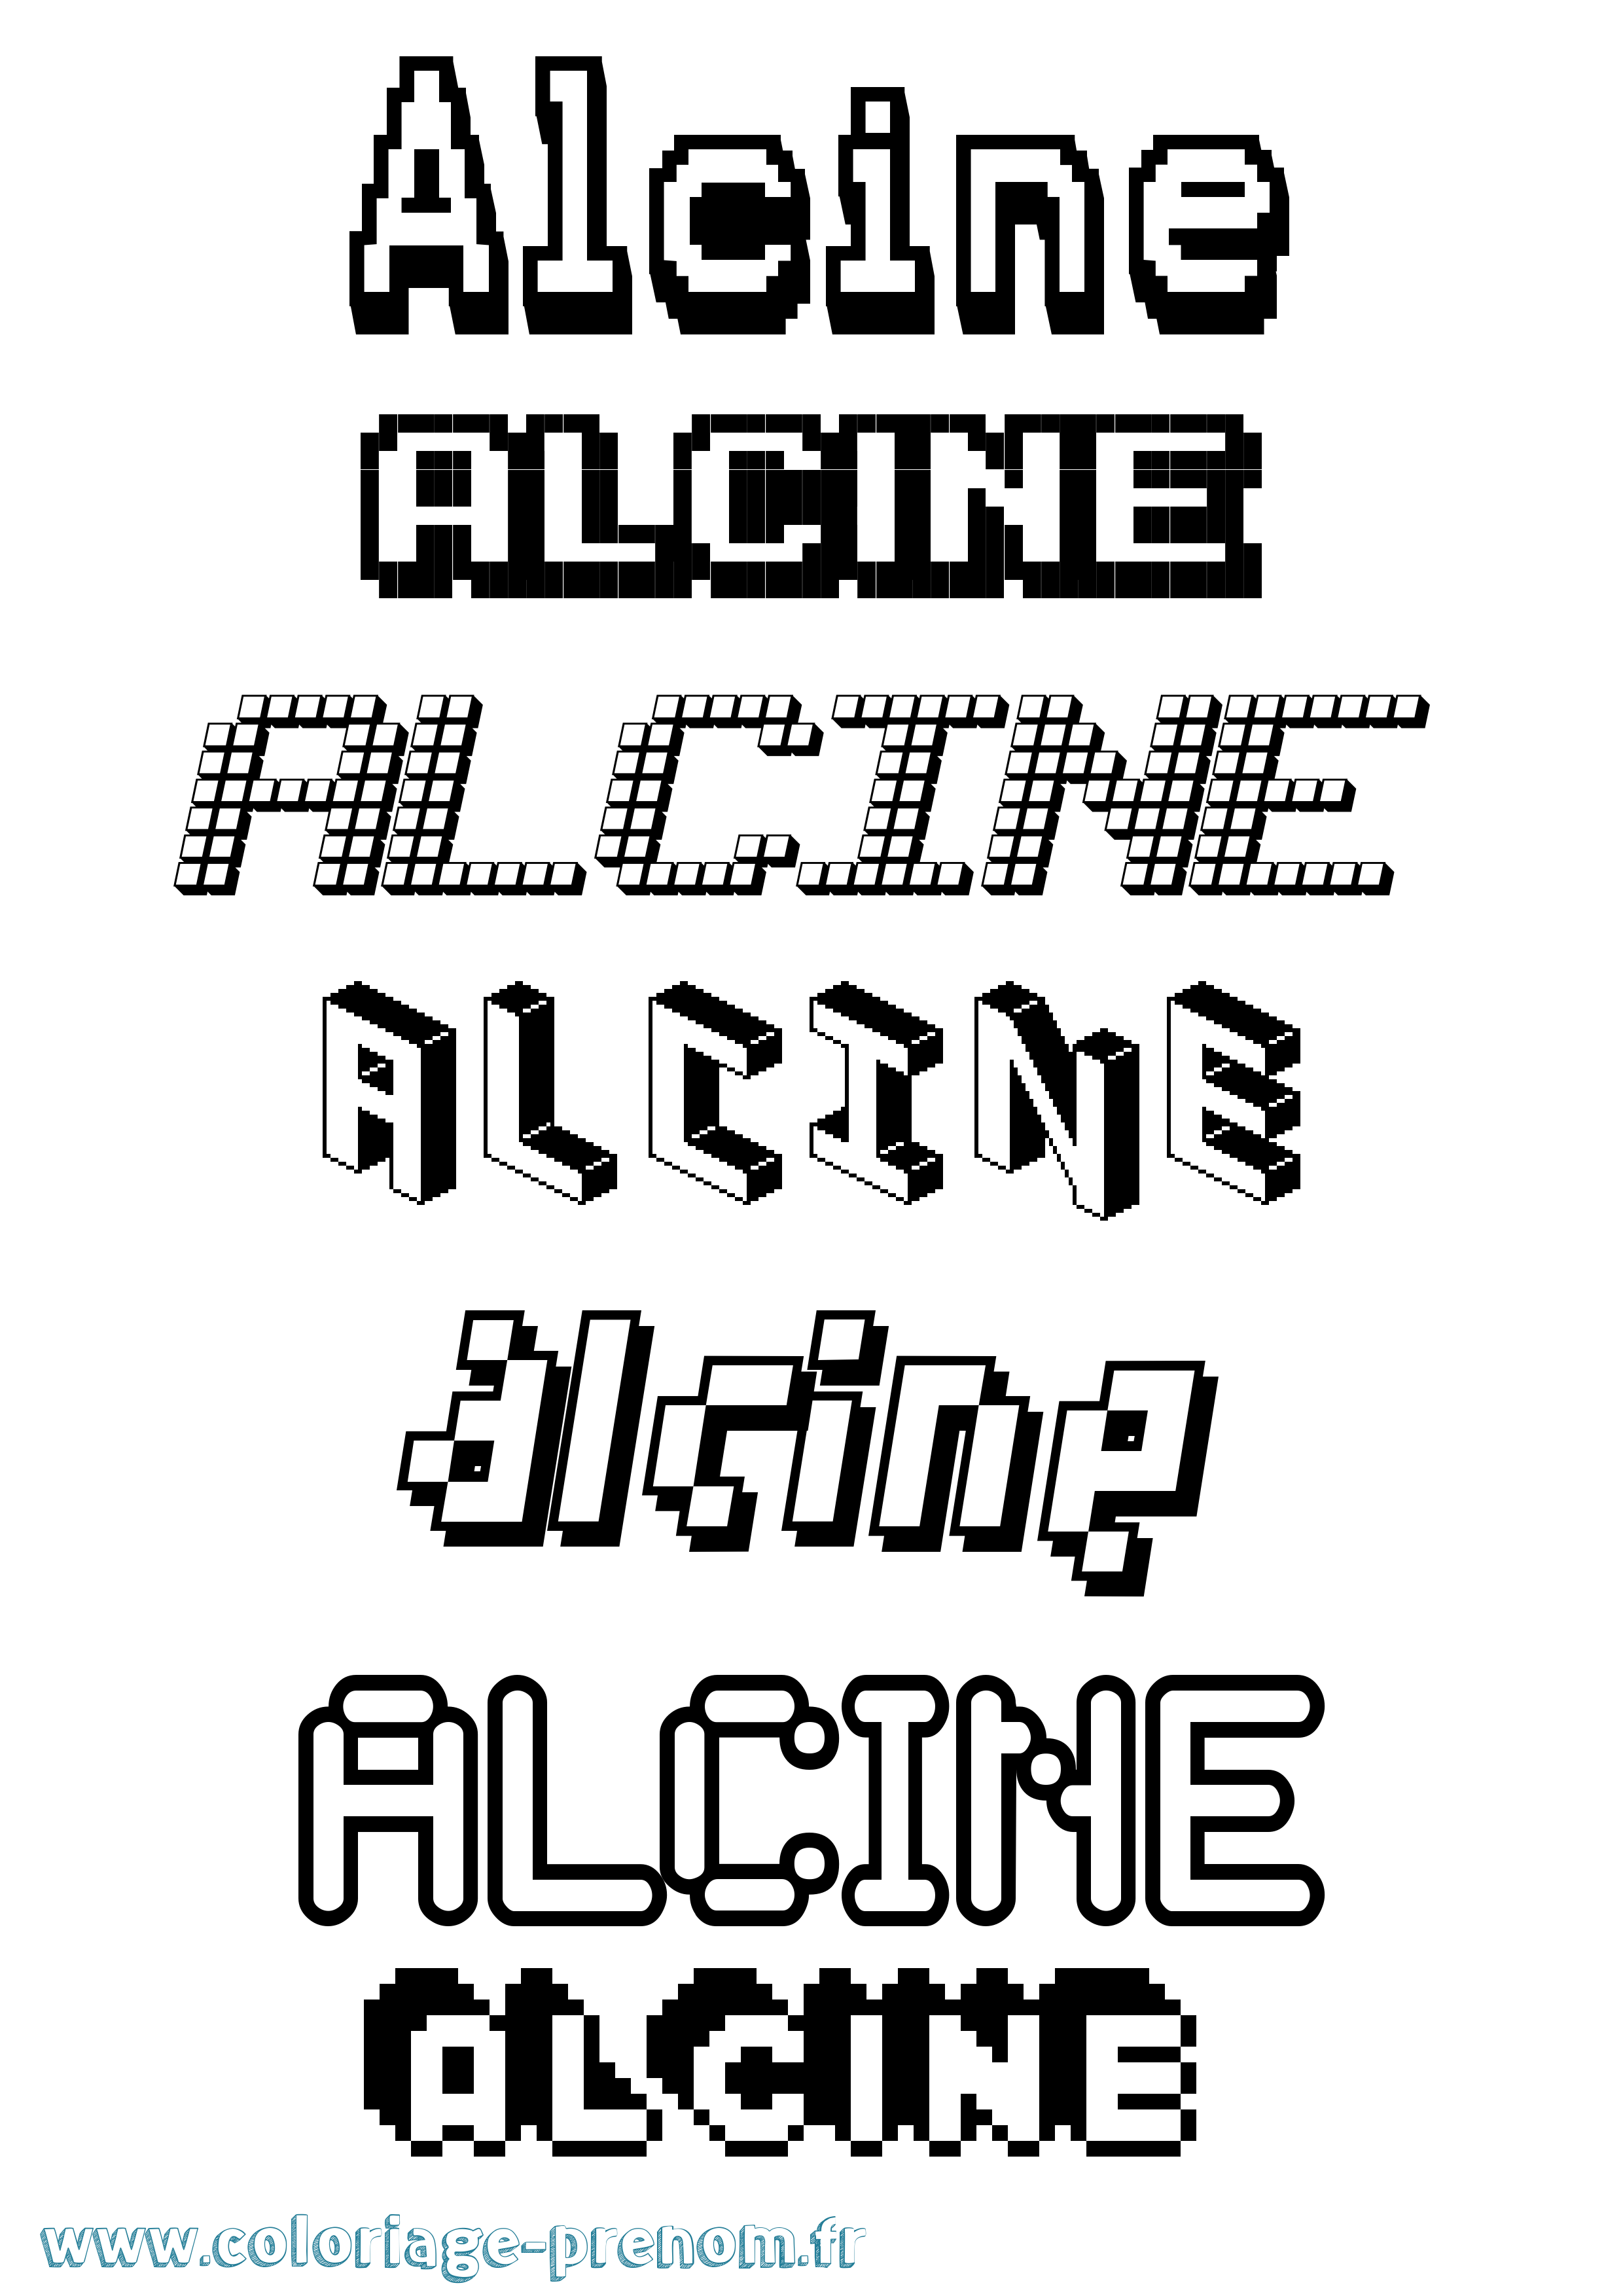 Coloriage prénom Alcine Pixel